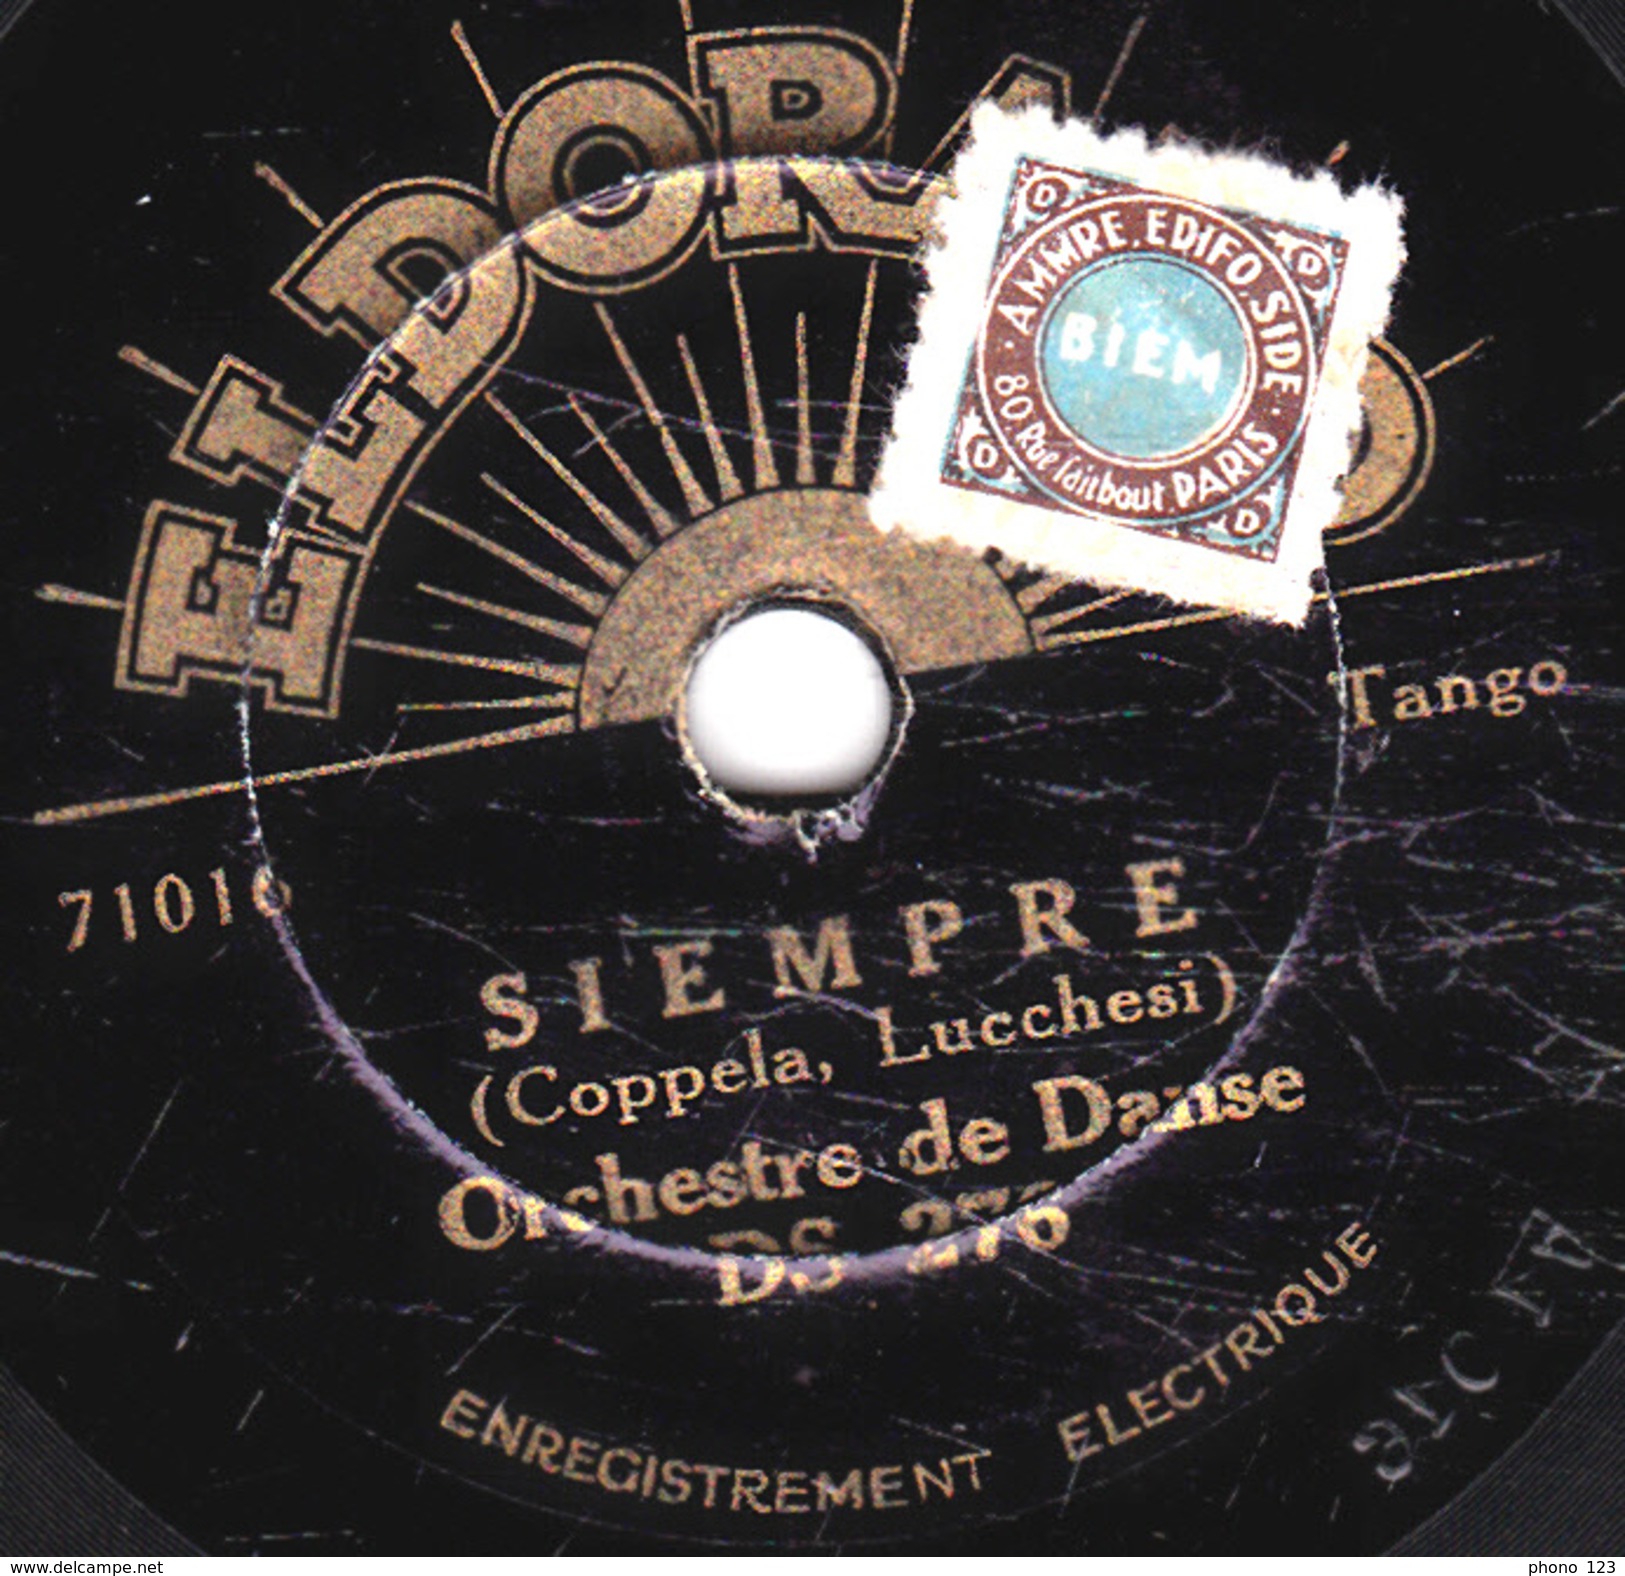 78 T. -  20 Cm - état B -  Orchestre De Danse - UNA LAGRIMA - SIEMPRE - 78 T - Disques Pour Gramophone